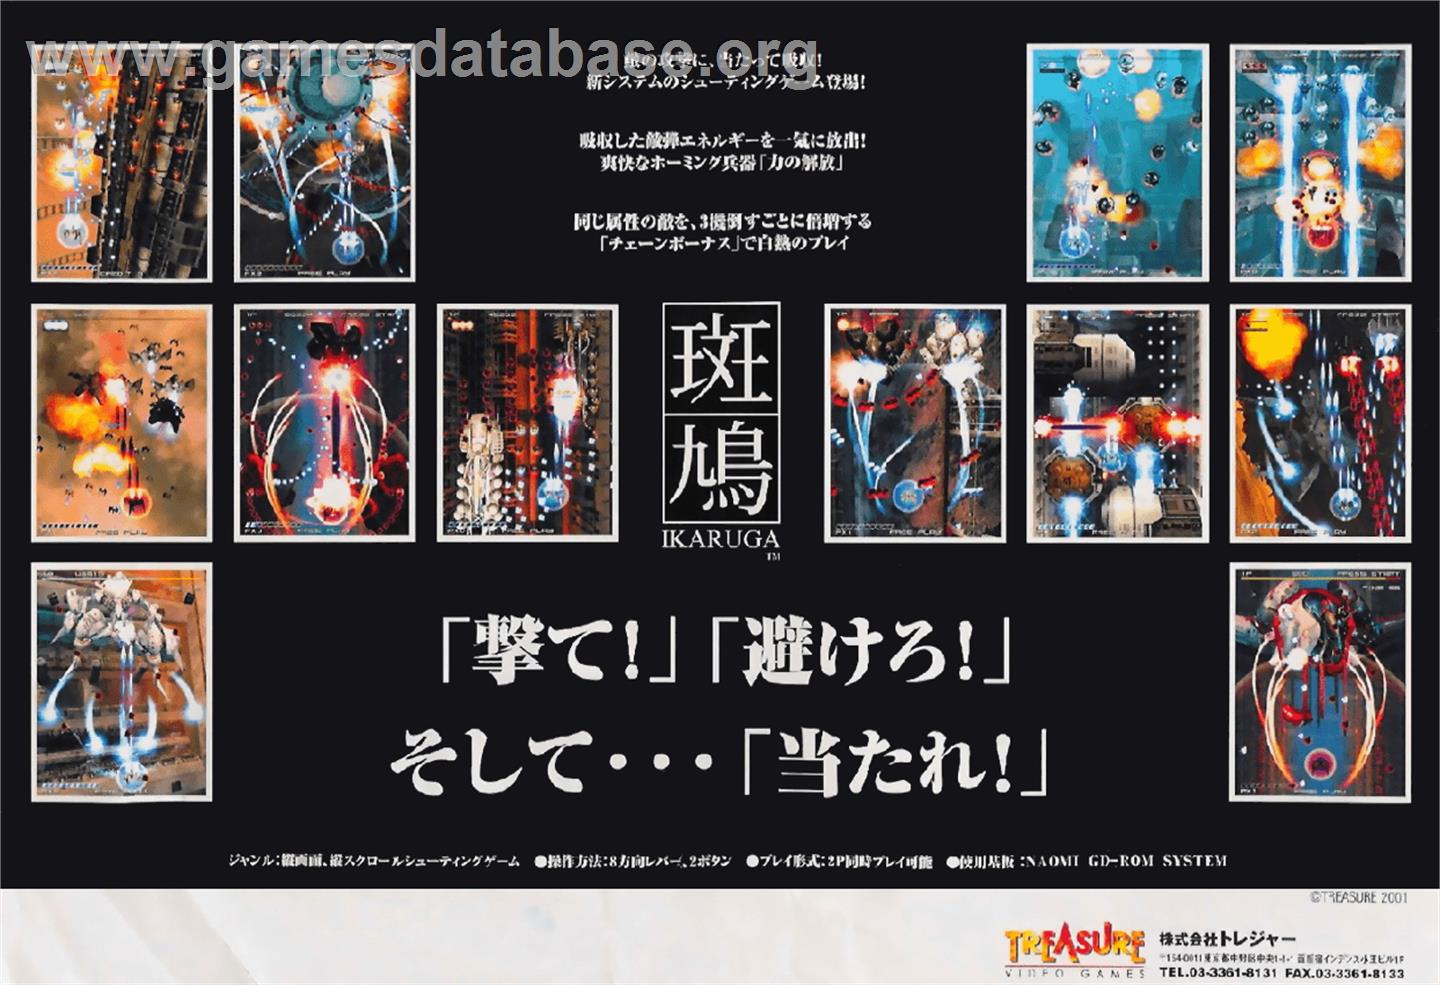 Ikaruga - Sega Naomi - Artwork - Advert